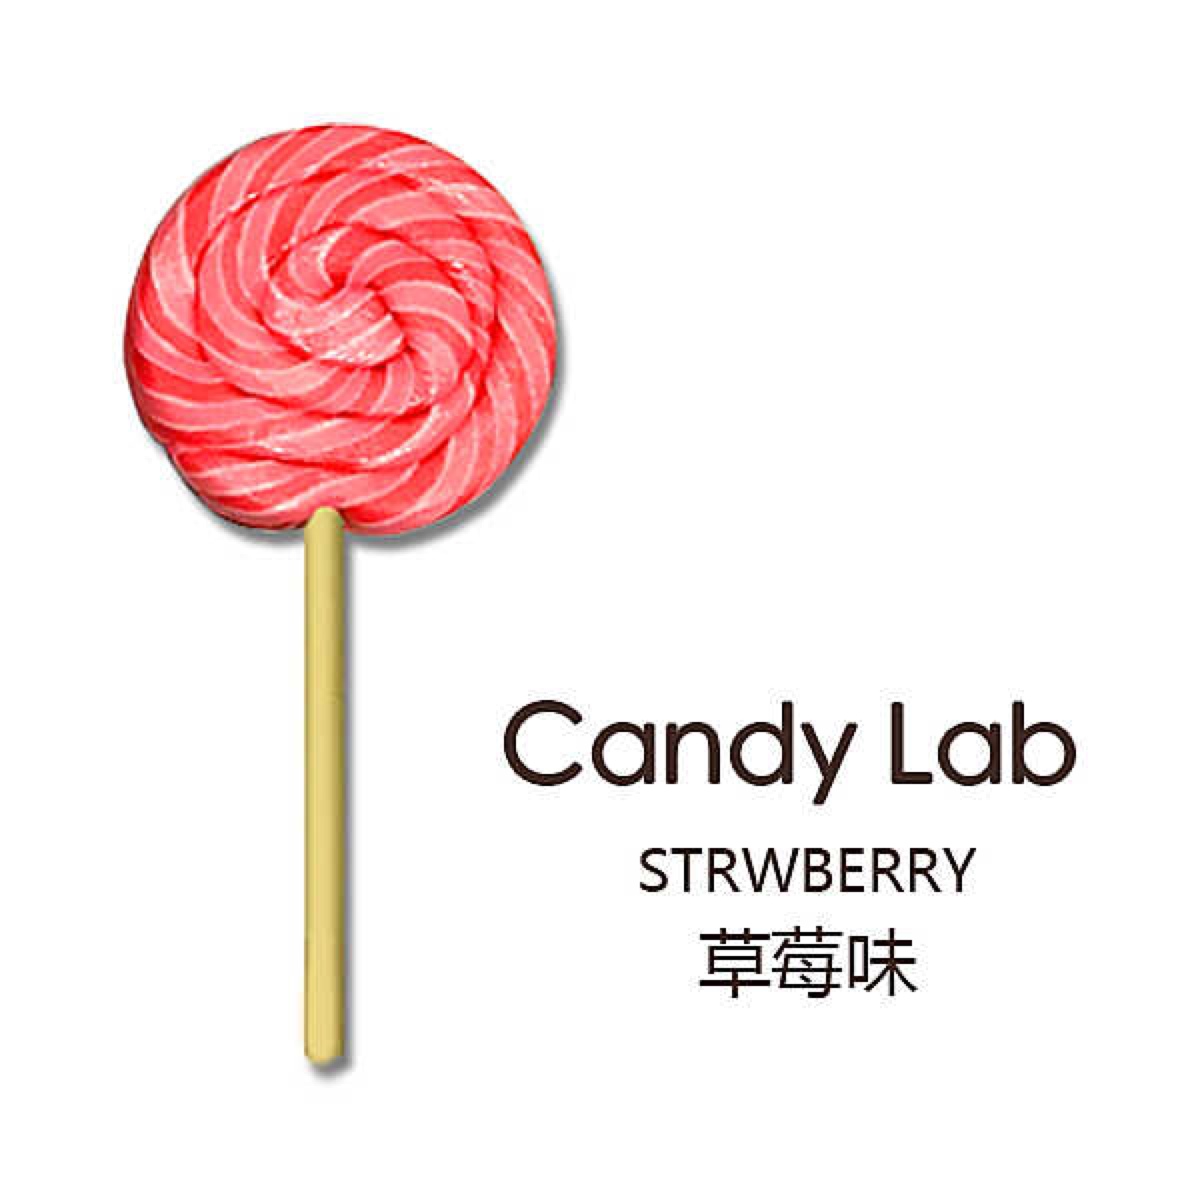 candy lab 澳洲纯手工糖果中号棒棒糖 45g 草莓味